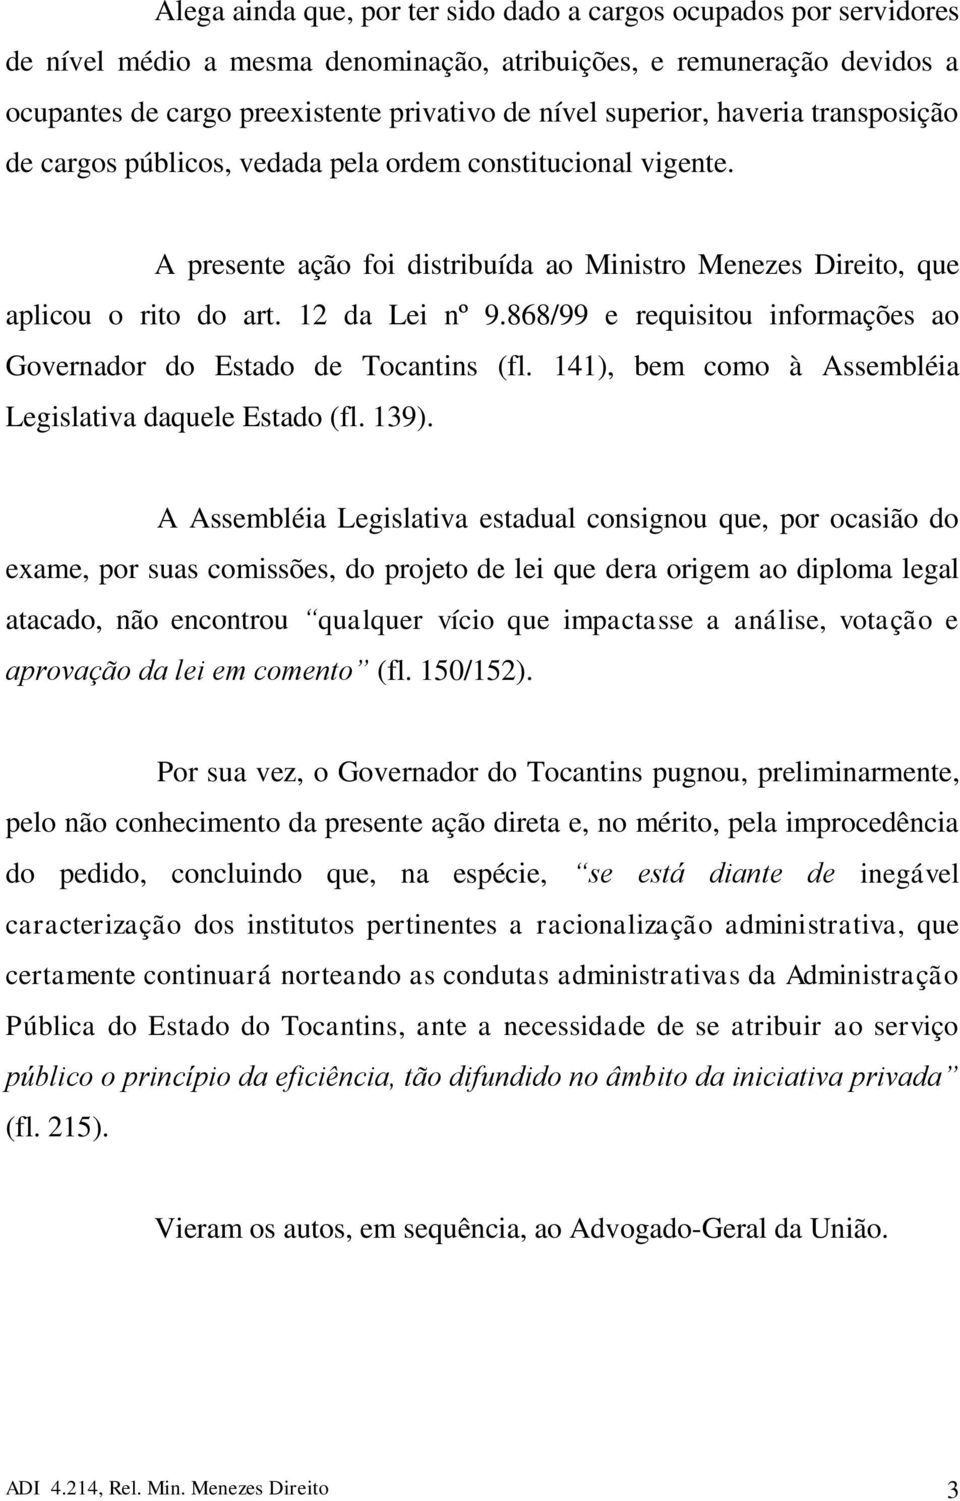 868/99 e requisitou informações ao Governador do Estado de Tocantins (fl. 141), bem como à Assembléia Legislativa daquele Estado (fl. 139).